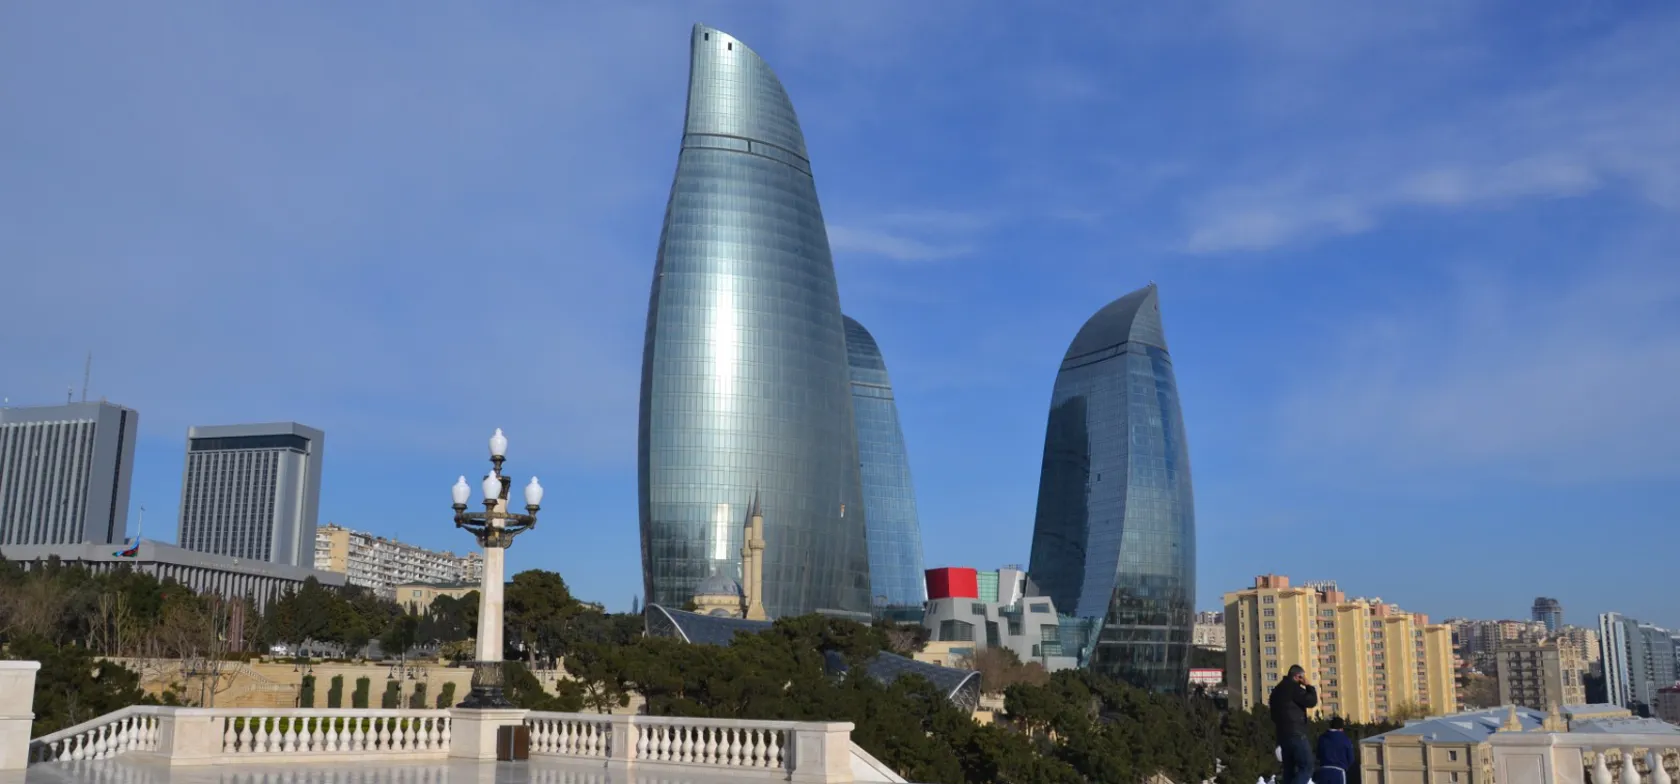 Bakus vartegn er de tre flammelignende højhuse, ”Flame Towers”. Foto Gert Lynge Sørensen